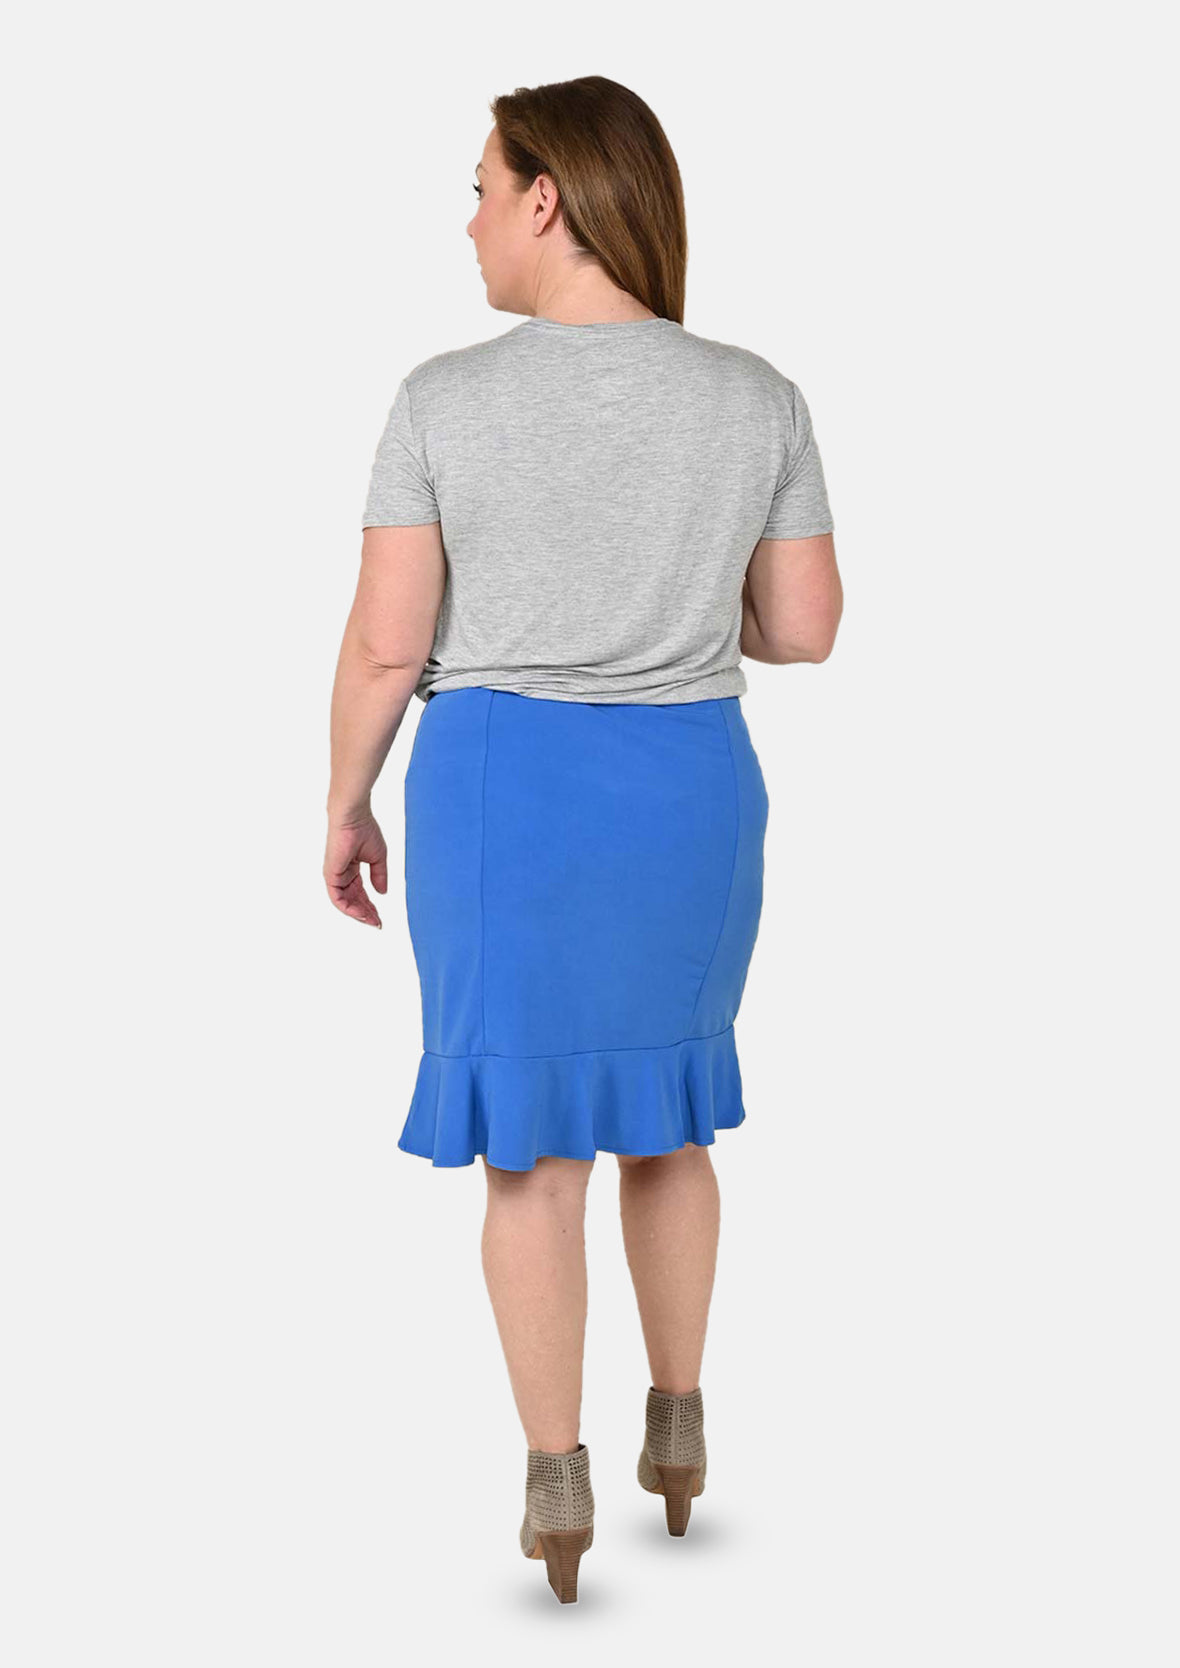 High-Waist Skirt With Ruffle Hem